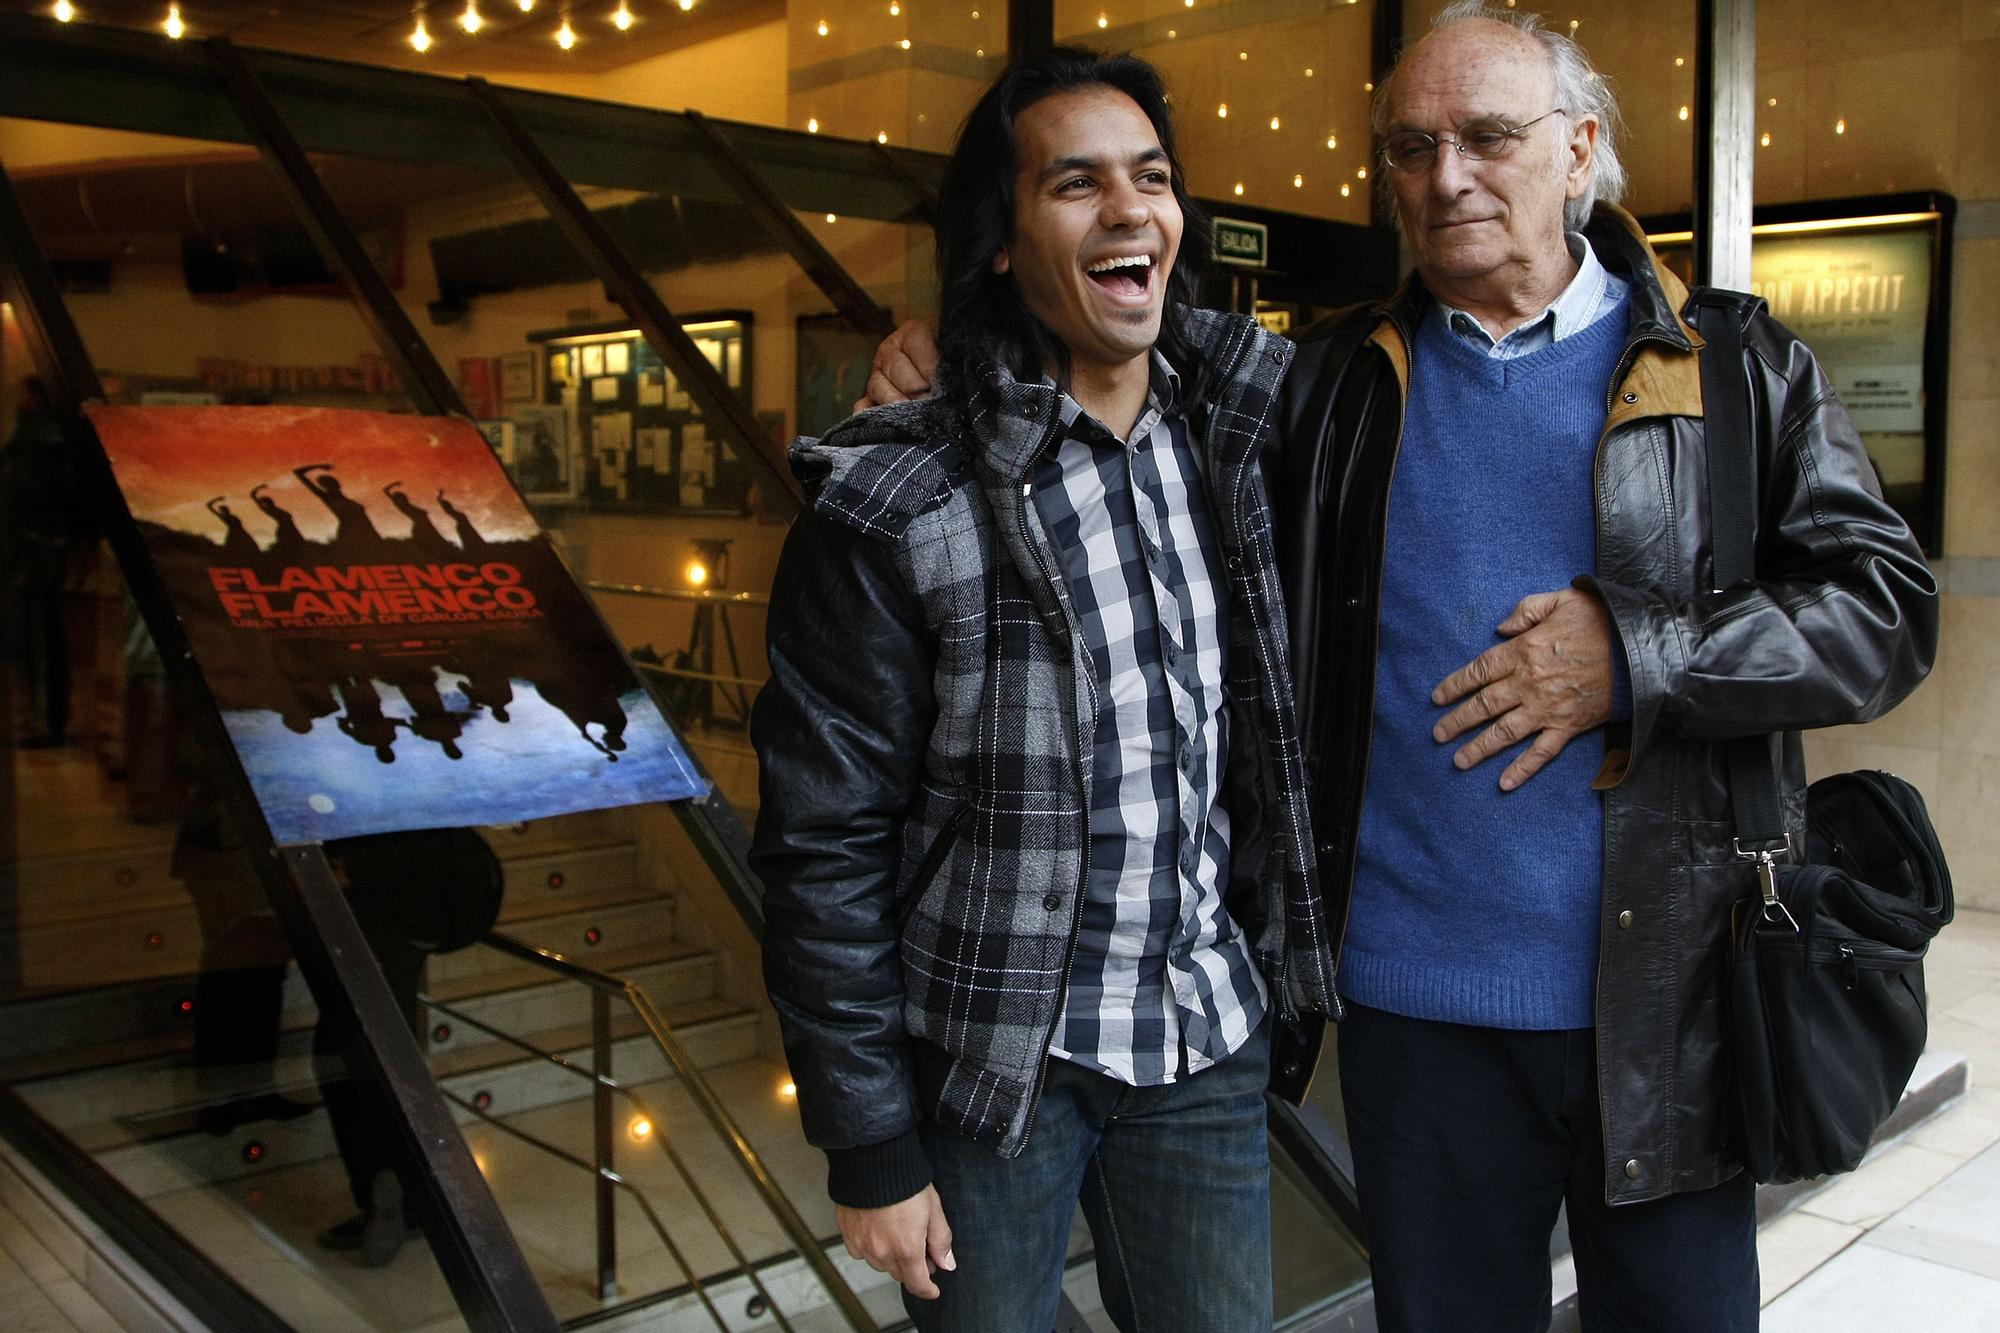 El bailaor Farruquito y el director de cine Carlos Saura en una imagen de 2010 tomada con motivo del estreno de 'Flamenco, flamenco'.